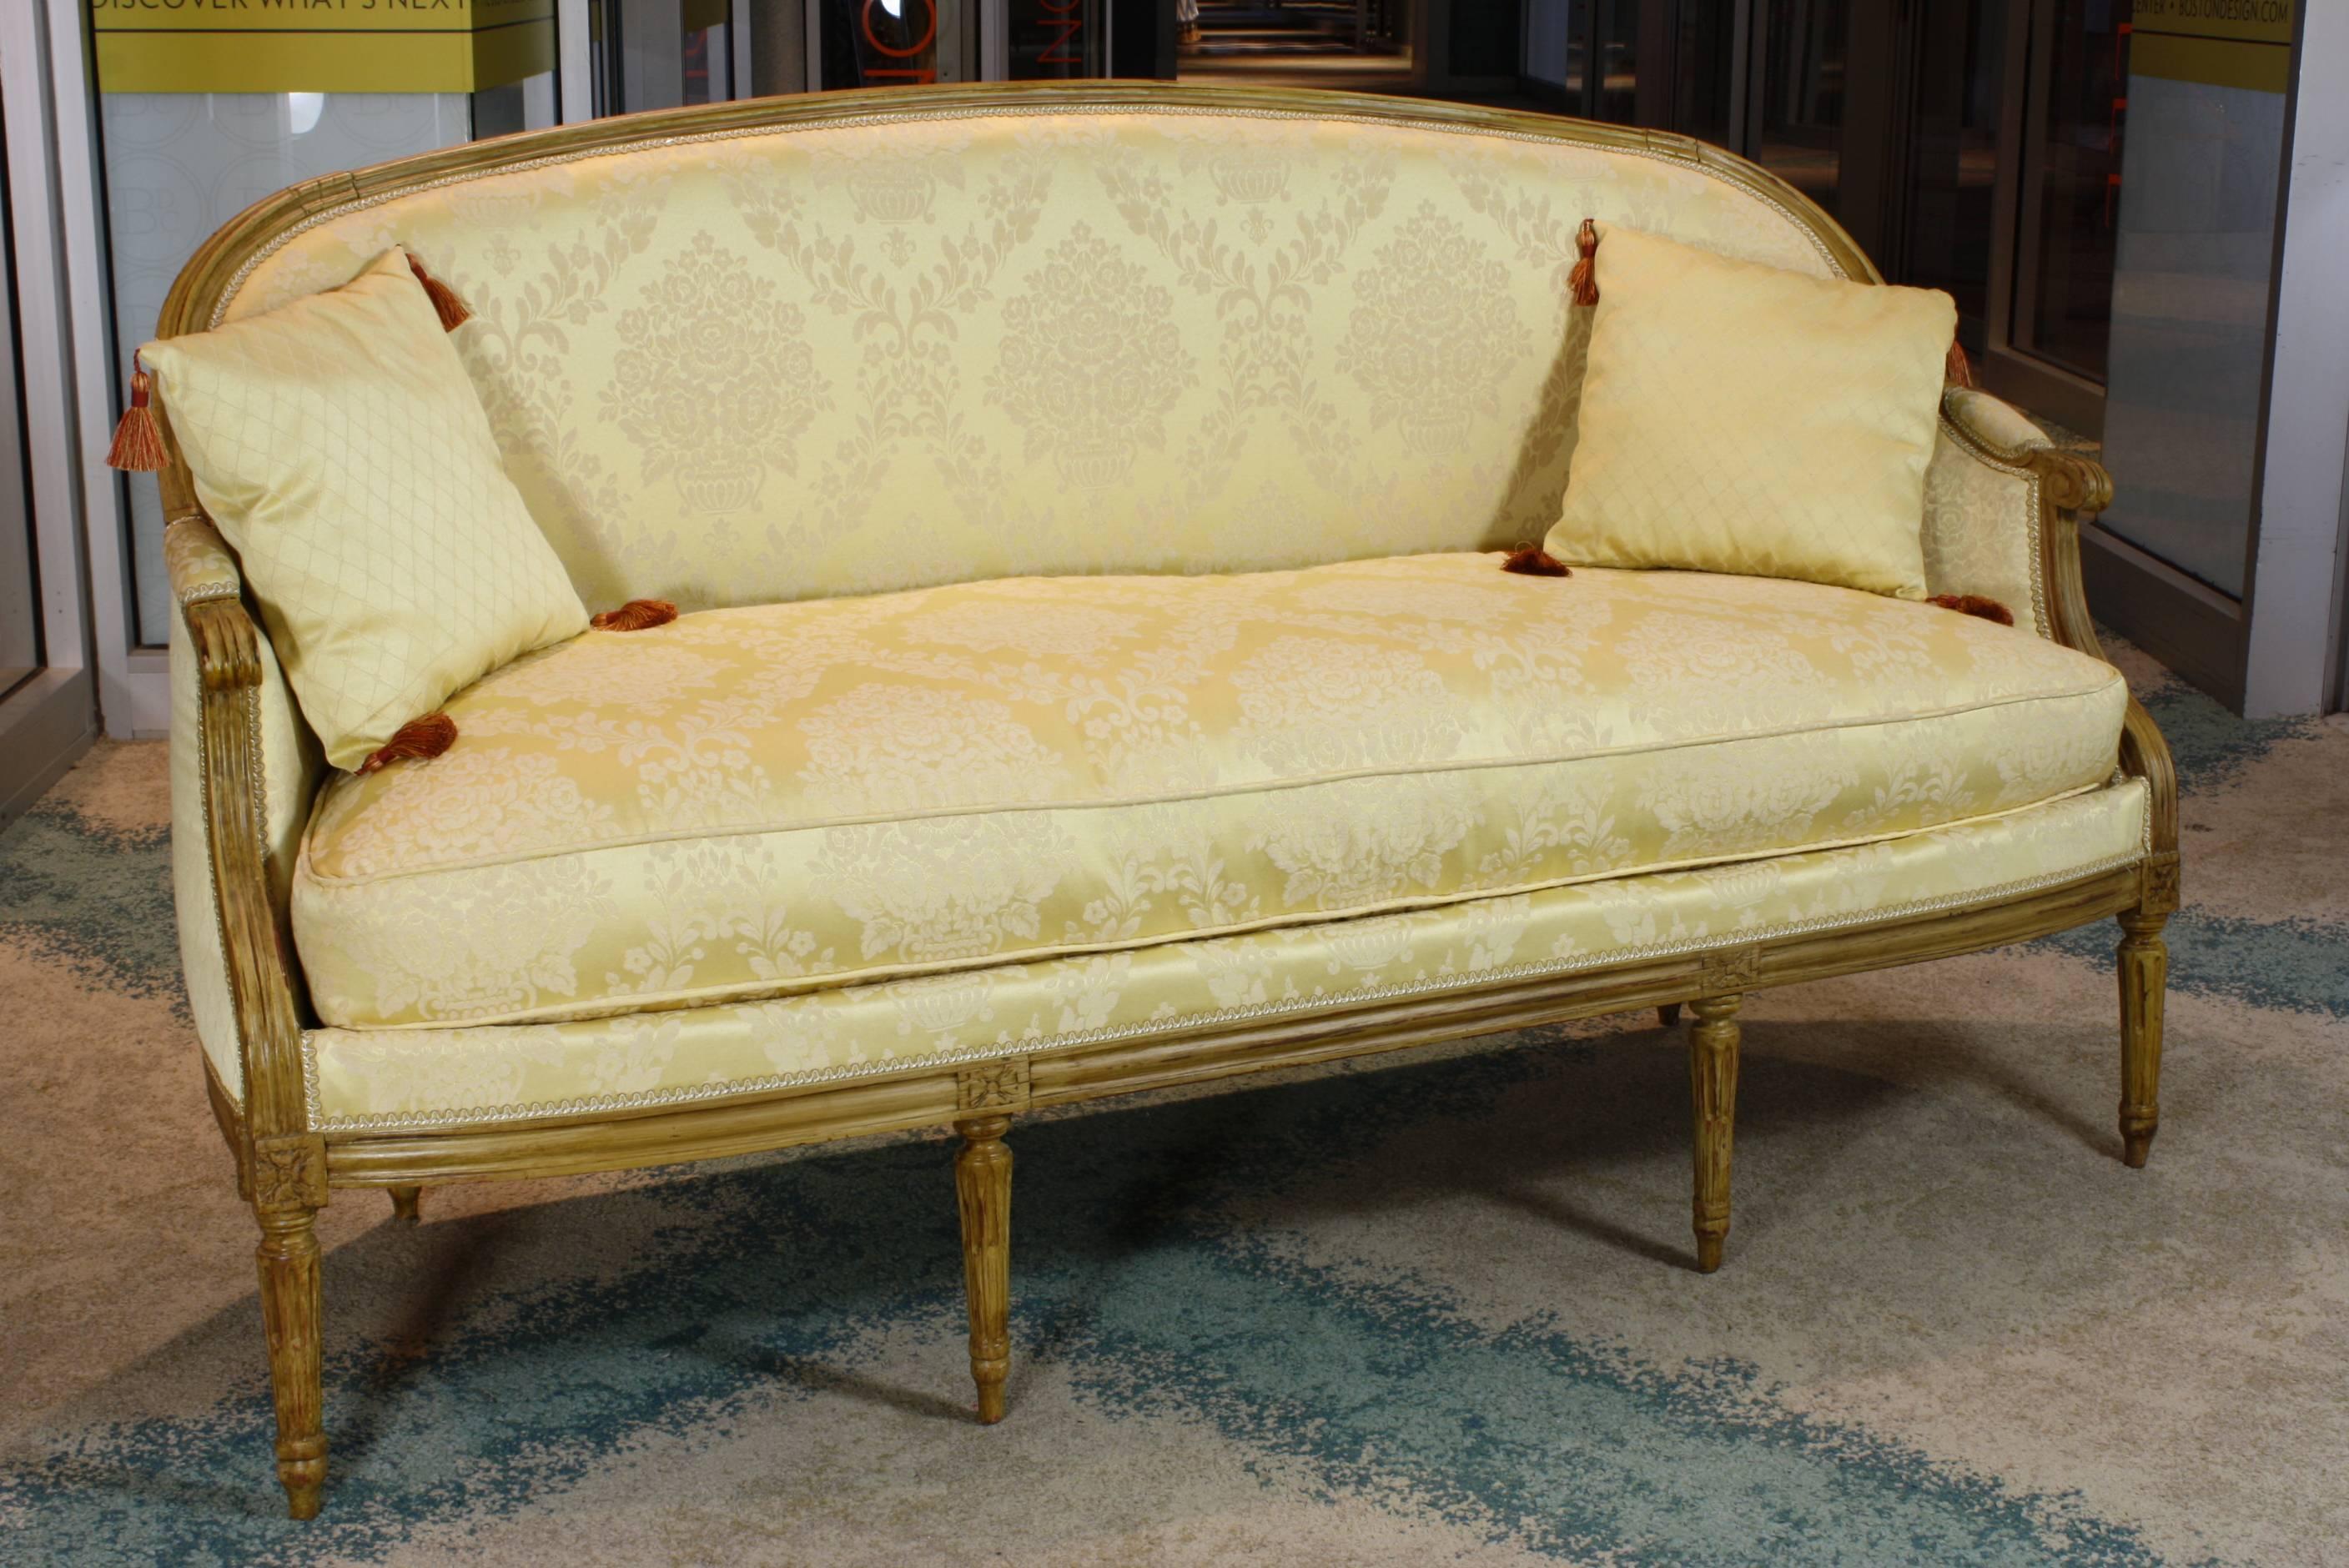 Elegantes neoklassizistisches Sofa oder Kanapee aus der Zeit Ludwigs XVI. mit separatem, daunengefülltem Sitzkissen, zwei kleinen, mit Quasten besetzten Kissen, lackiertem Rahmen und konisch zulaufenden, kannelierten Beinen.  Das Sofa wurde